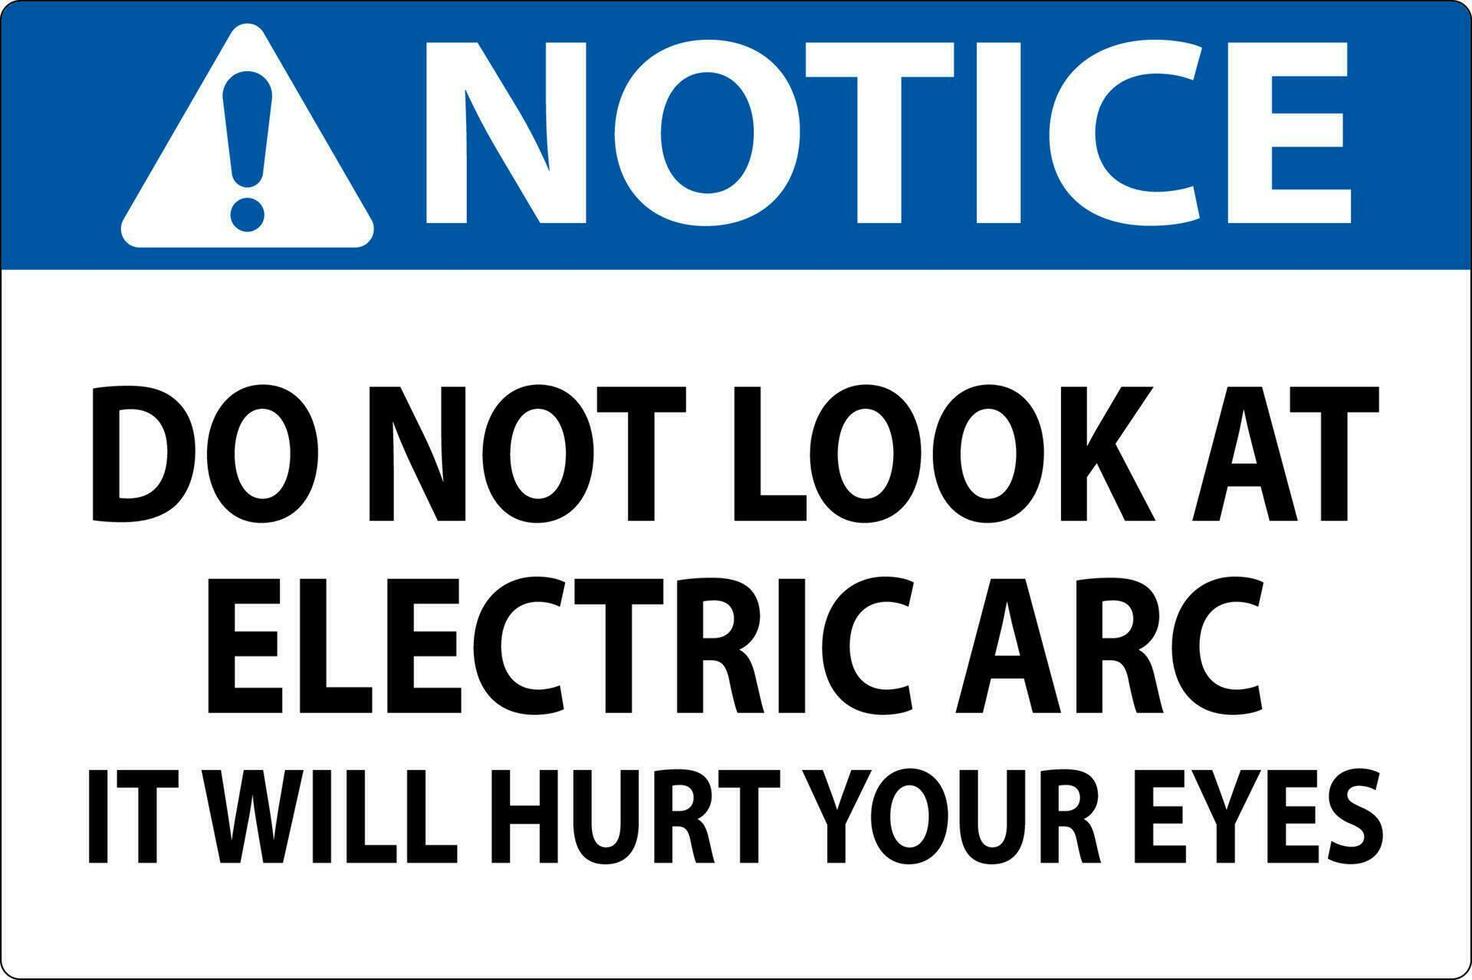 Avviso cartello fare non Guarda a il elettrico arco esso volontà male il tuo occhi vettore